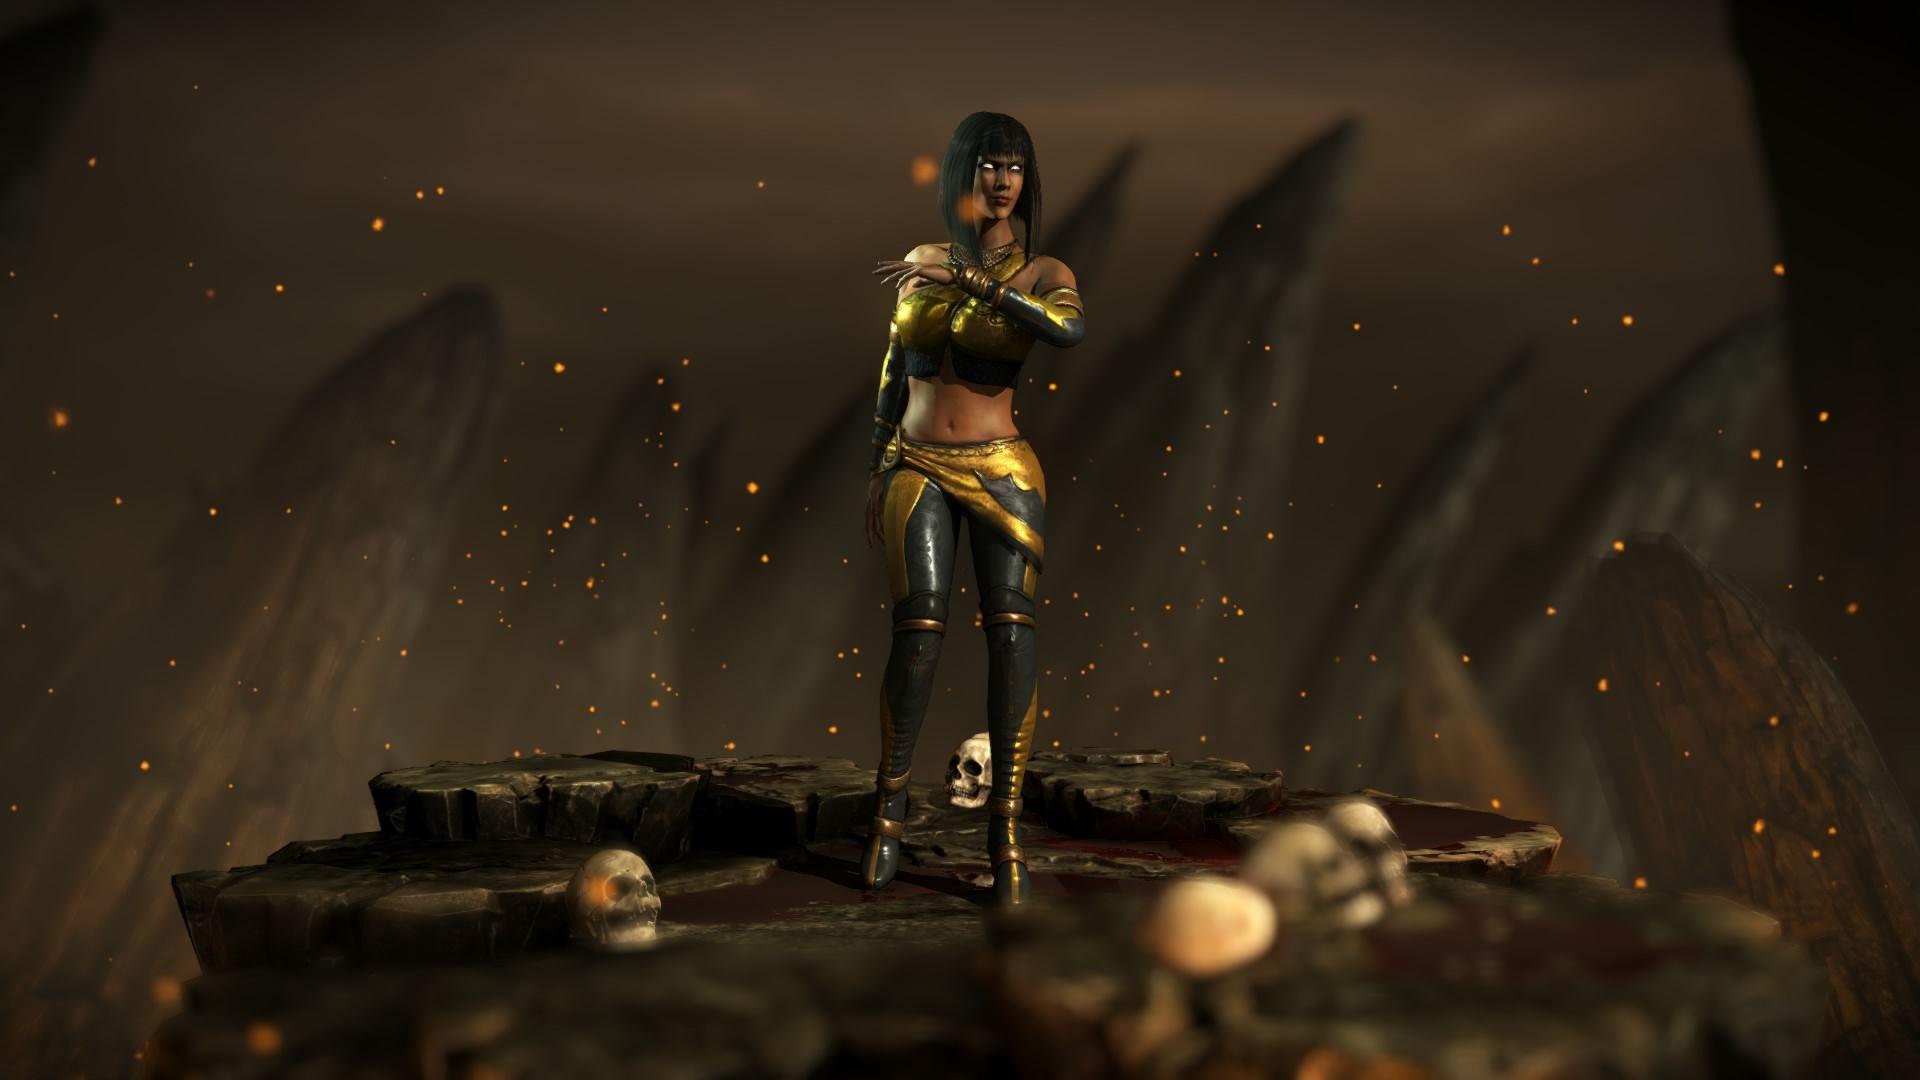 Mortal Kombat X Tanya